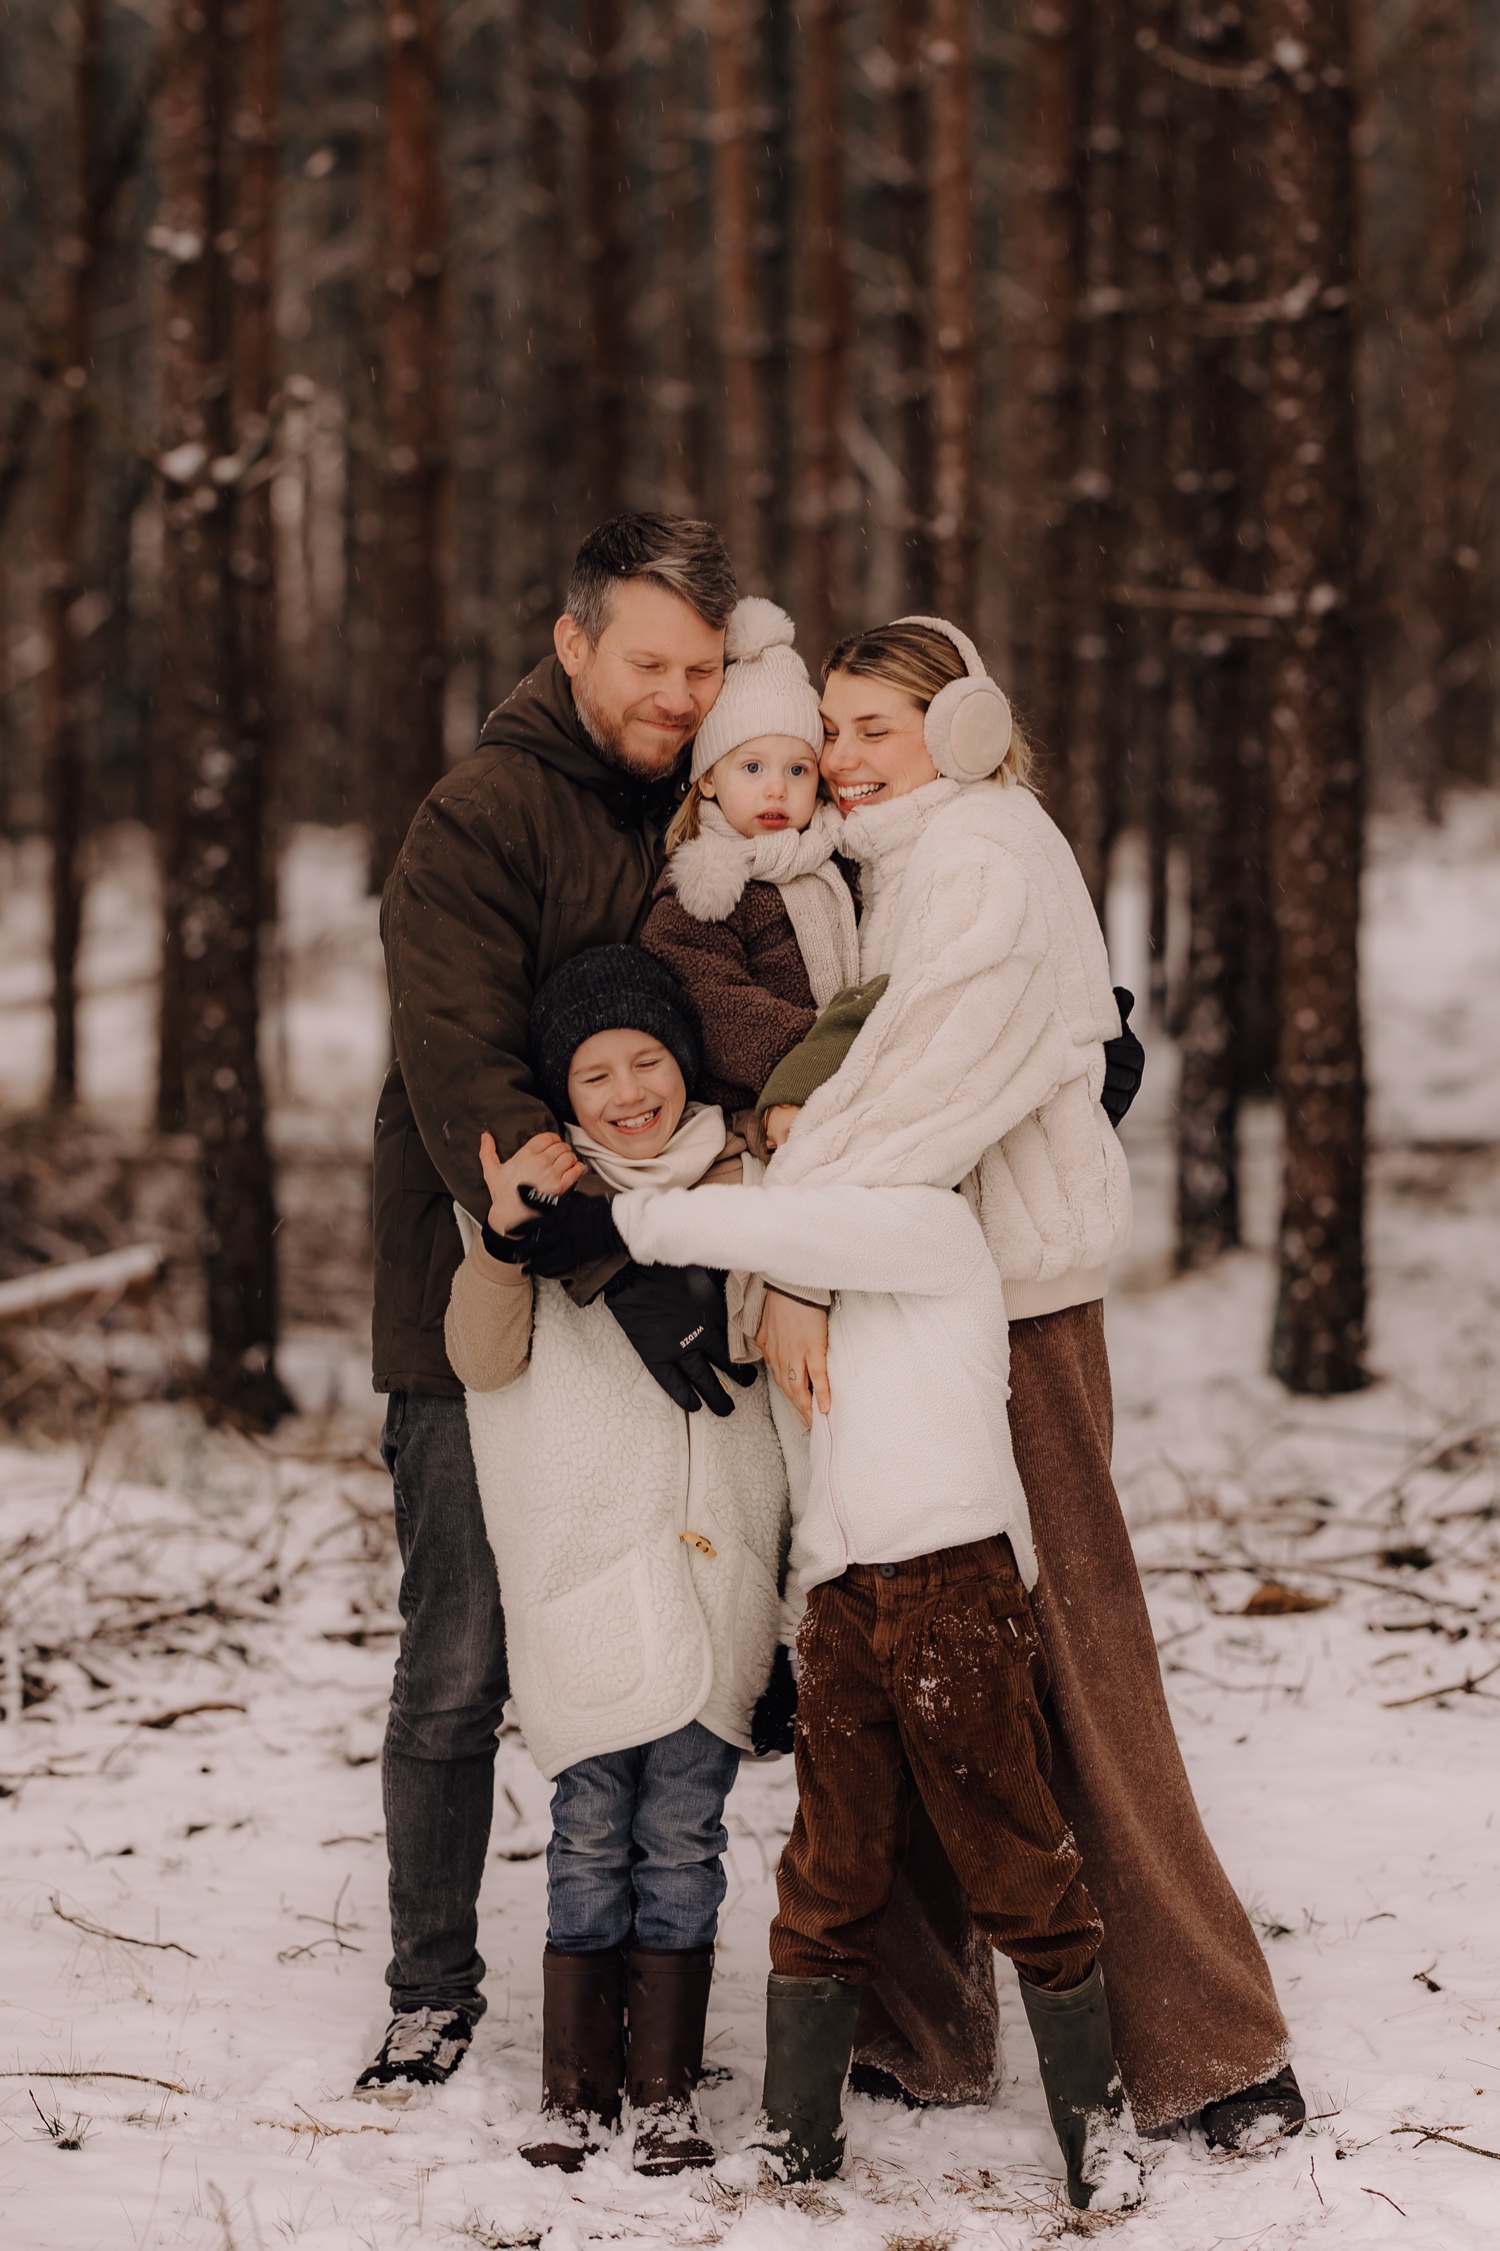 gezin knuffelt in de sneeuw